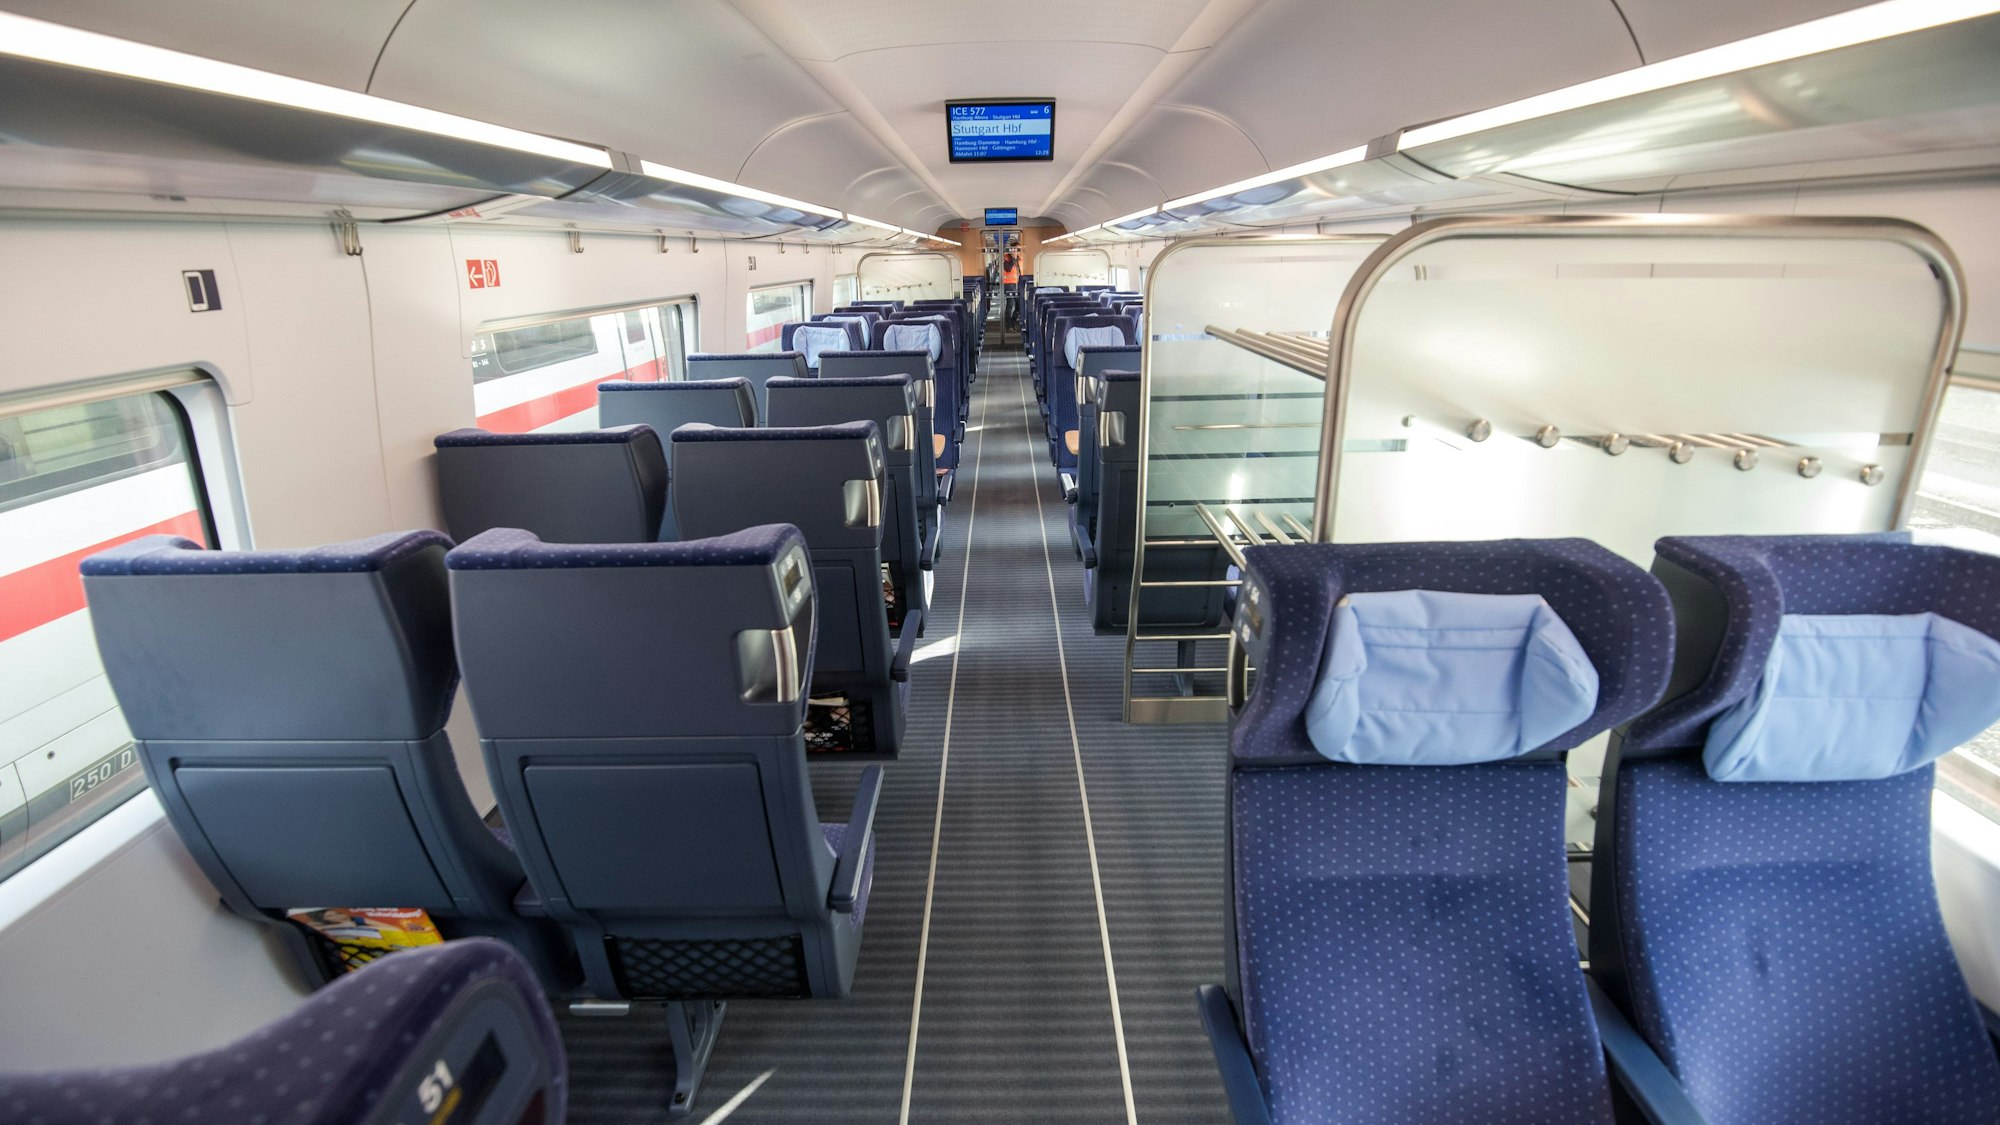 Ein ICE der Deutschen Bahn. Zu sehen sind mehrere blaue Sitze und eine Kofferablage in einem leeren Abteil.